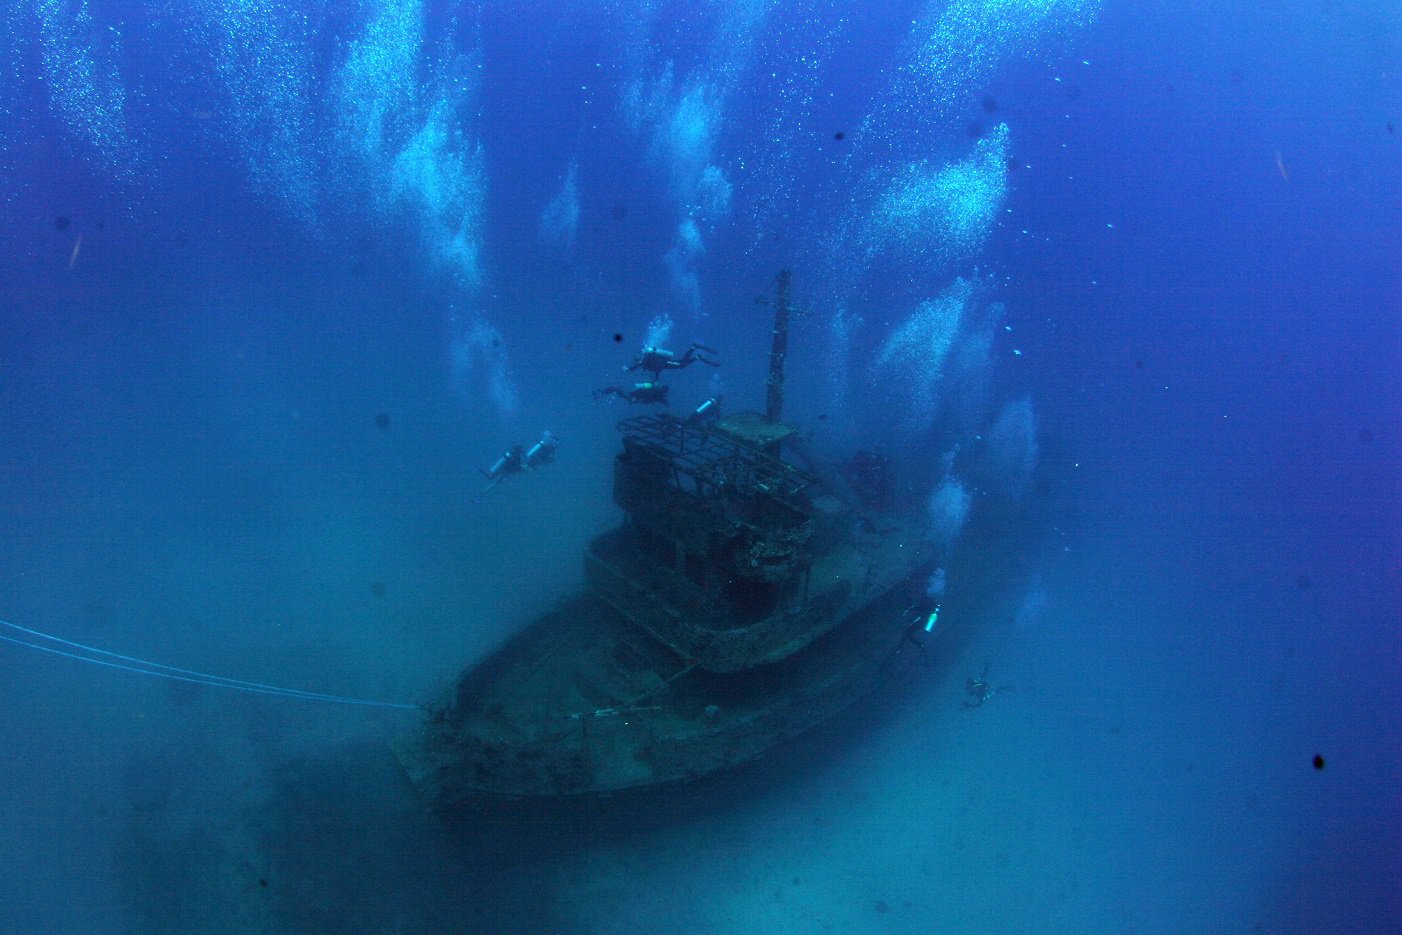 Mergulho autnomo permite explorar navios afundados a mais de 32 metros de profundidade